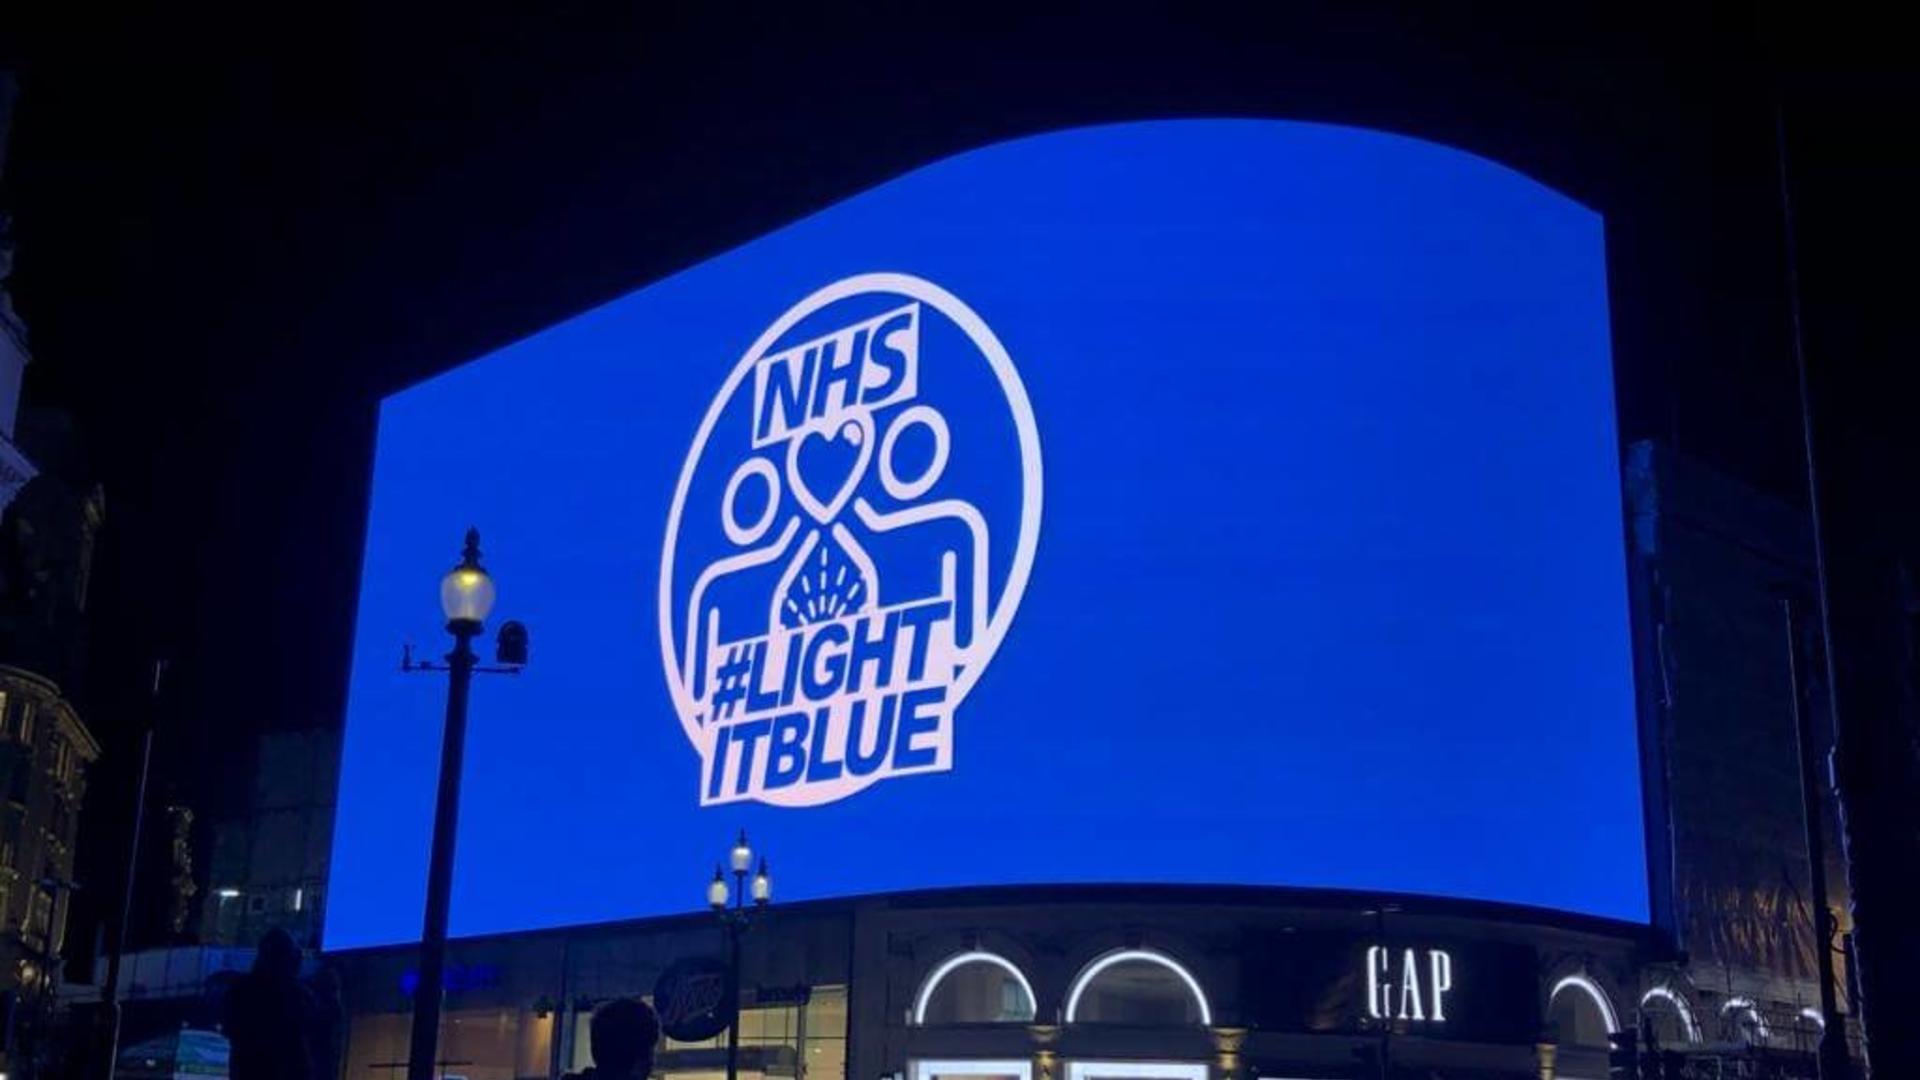 NHS #LightItBlue